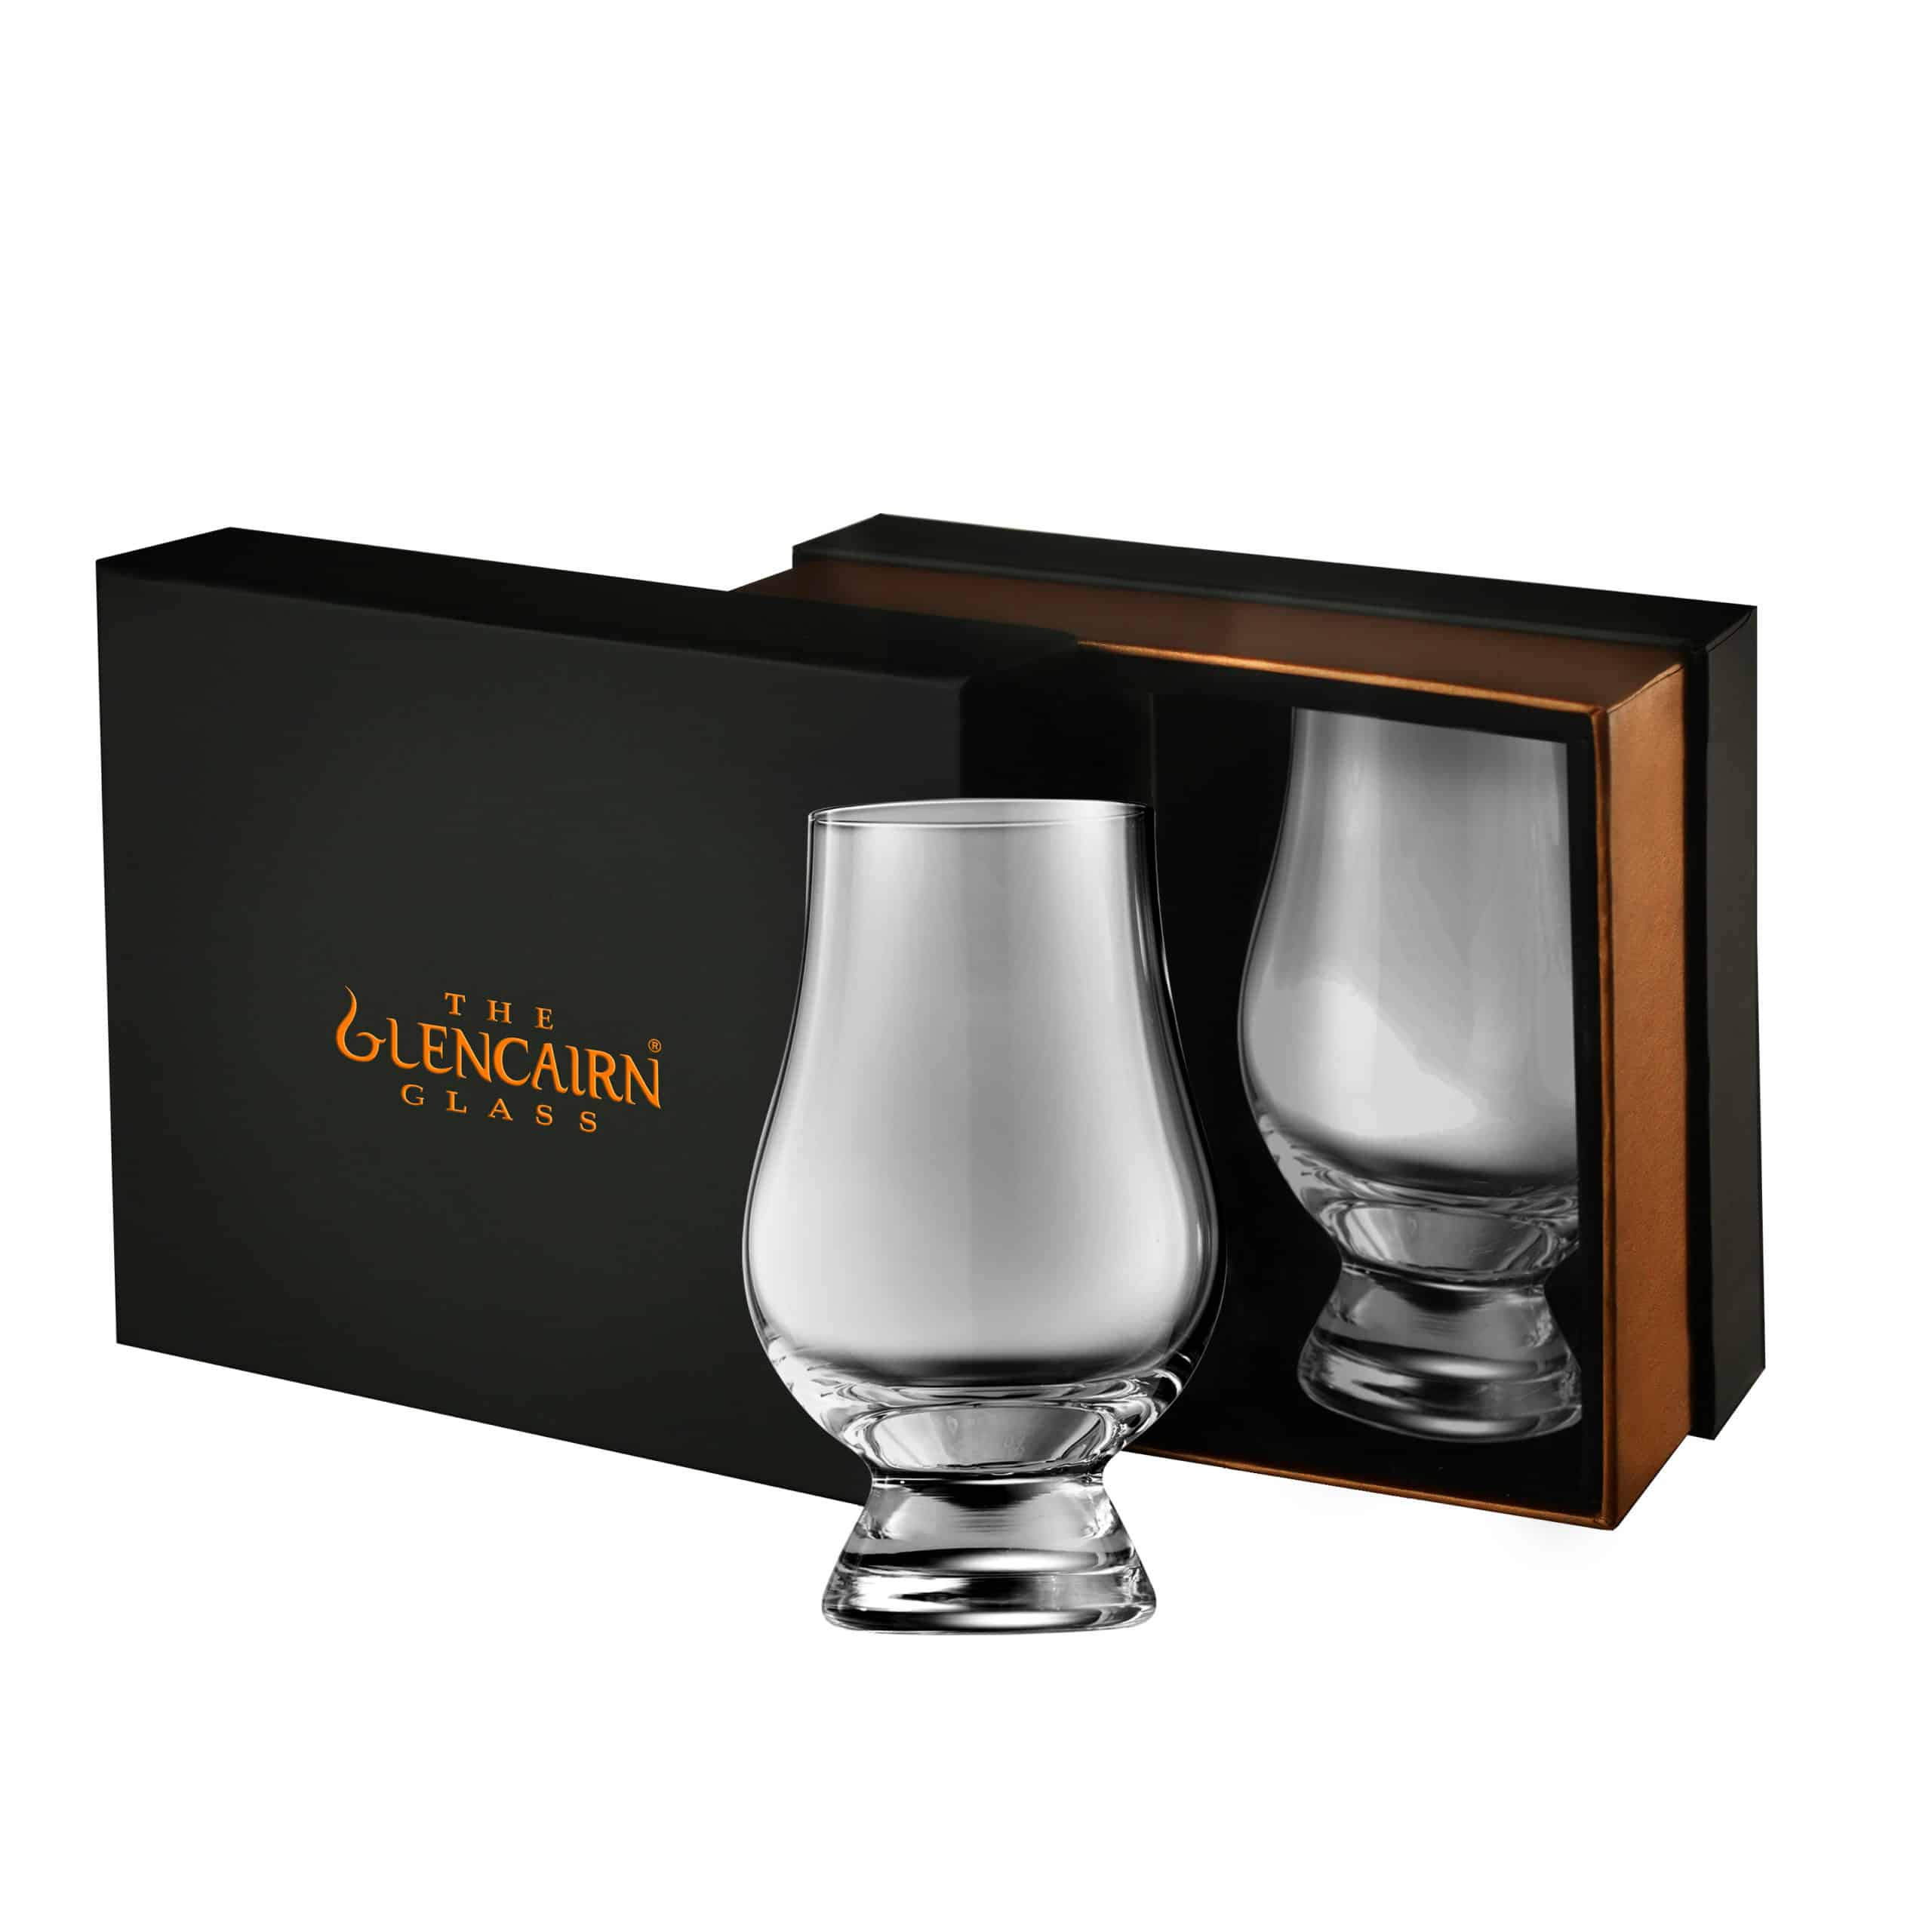 Glencairn Crystal whisky glass set of 2 